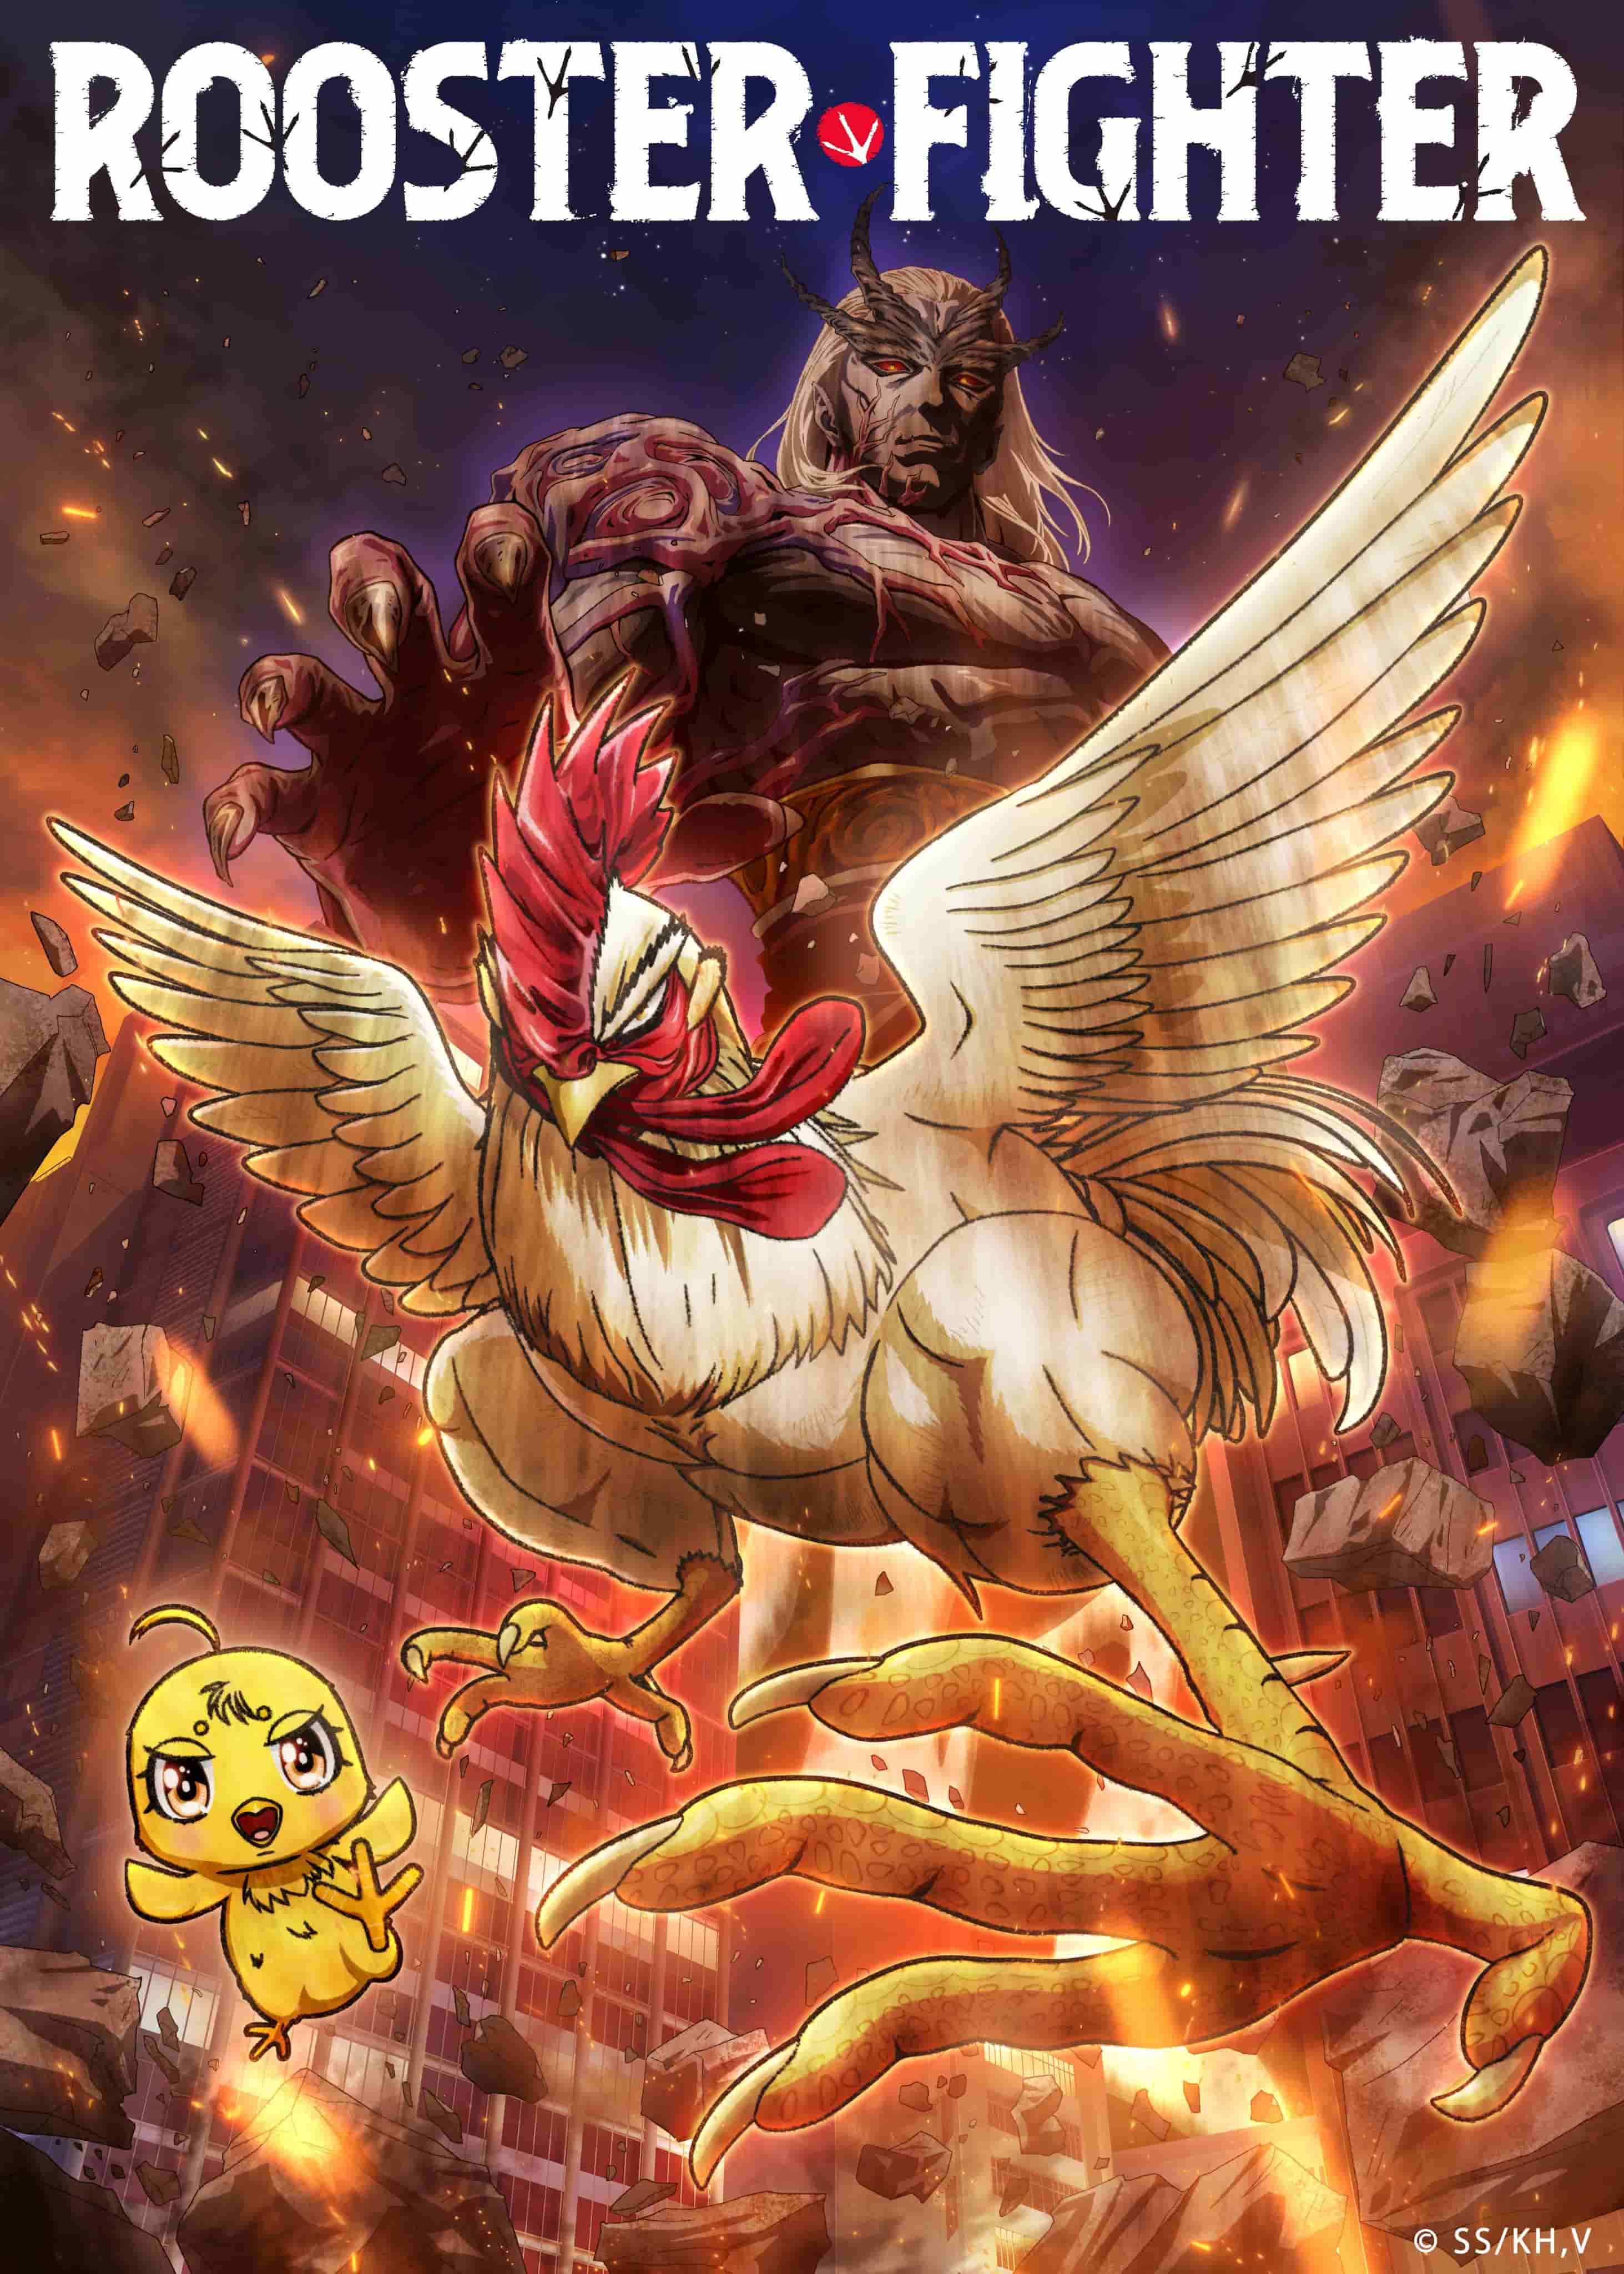 2024年樱谷秀原作漫画《公鸡斗士》宣布改编为动画，并公开PV、视觉图、主要制作人员，详情待后续发表！